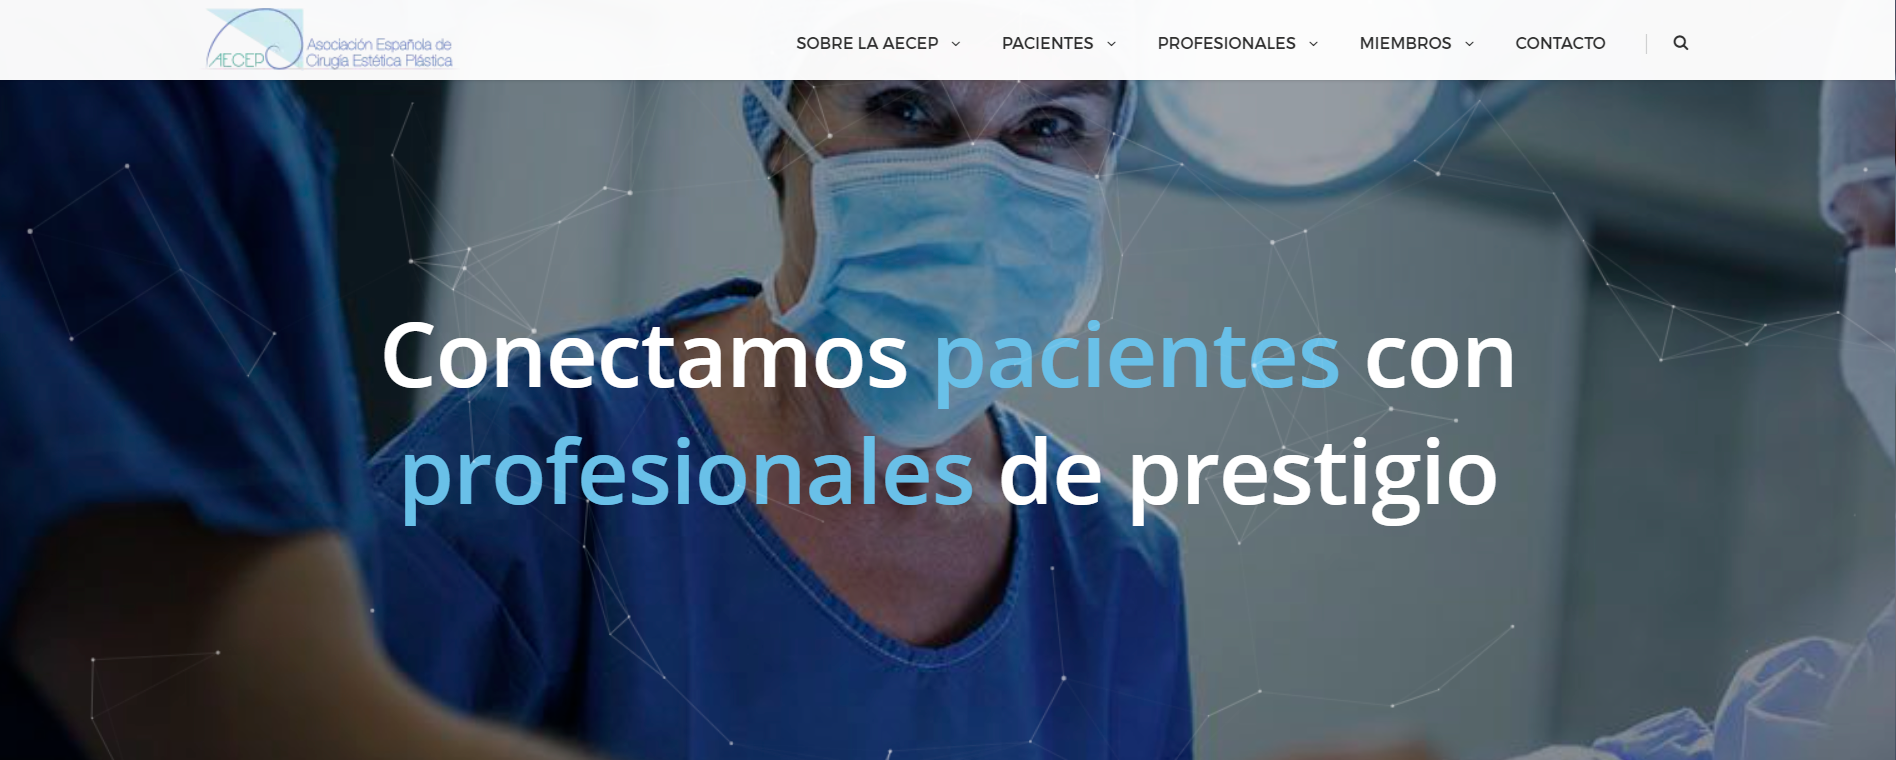 AECEP Joaquim Suñol Cirugia Plastica Estetica